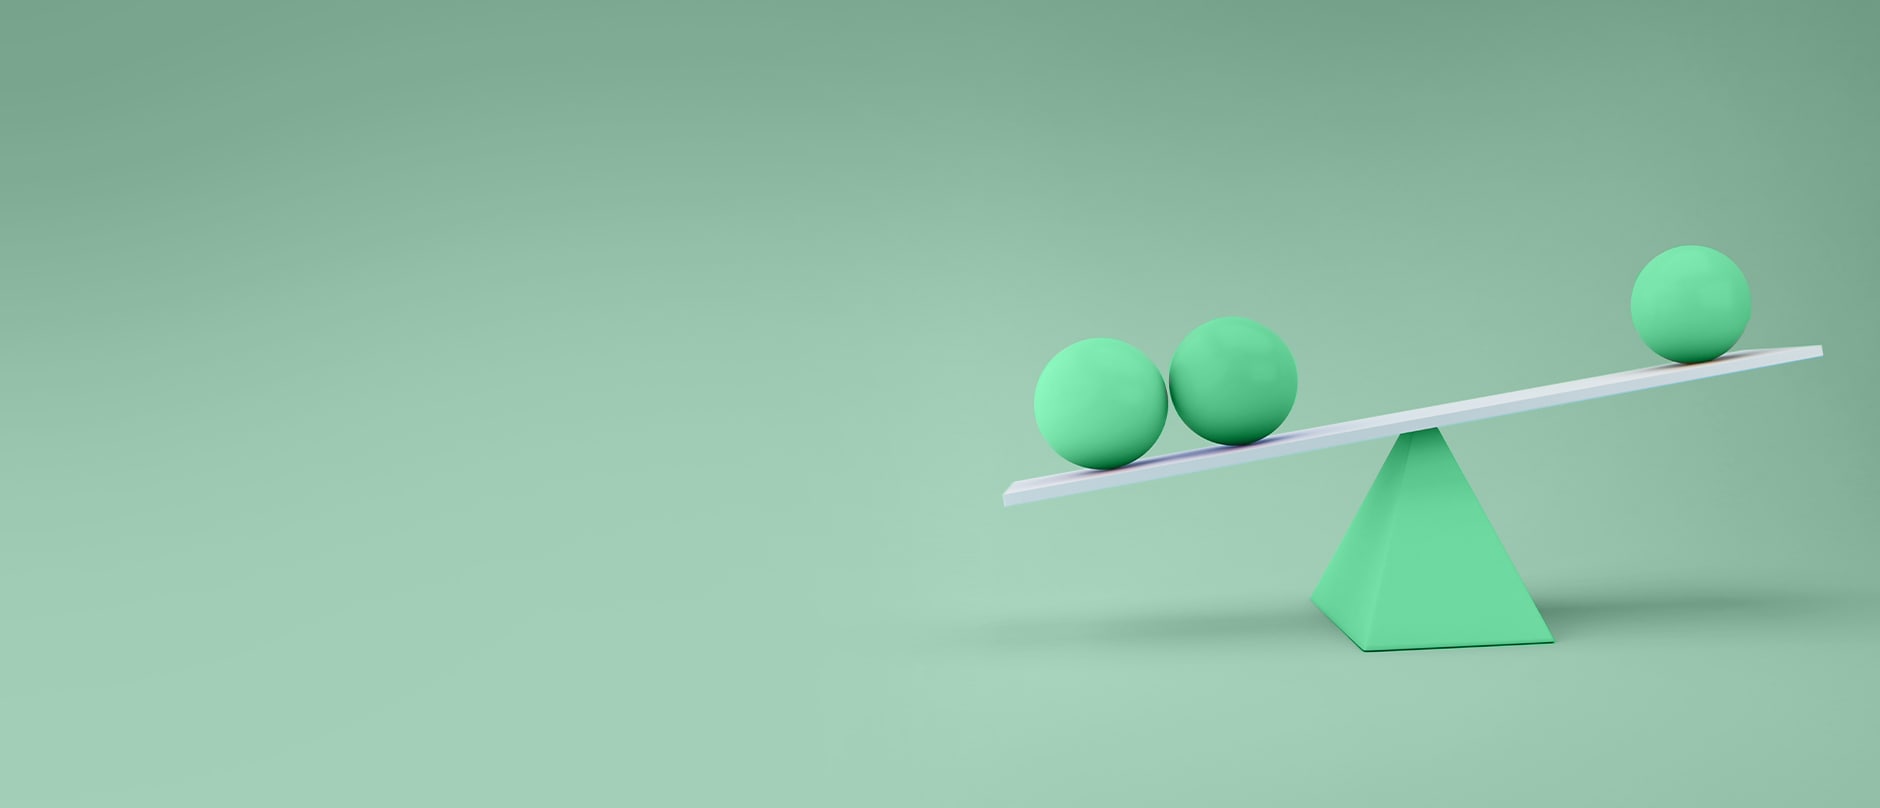 drei grüne Bälle balancieren auf einem Brett mit grünem Dreieck